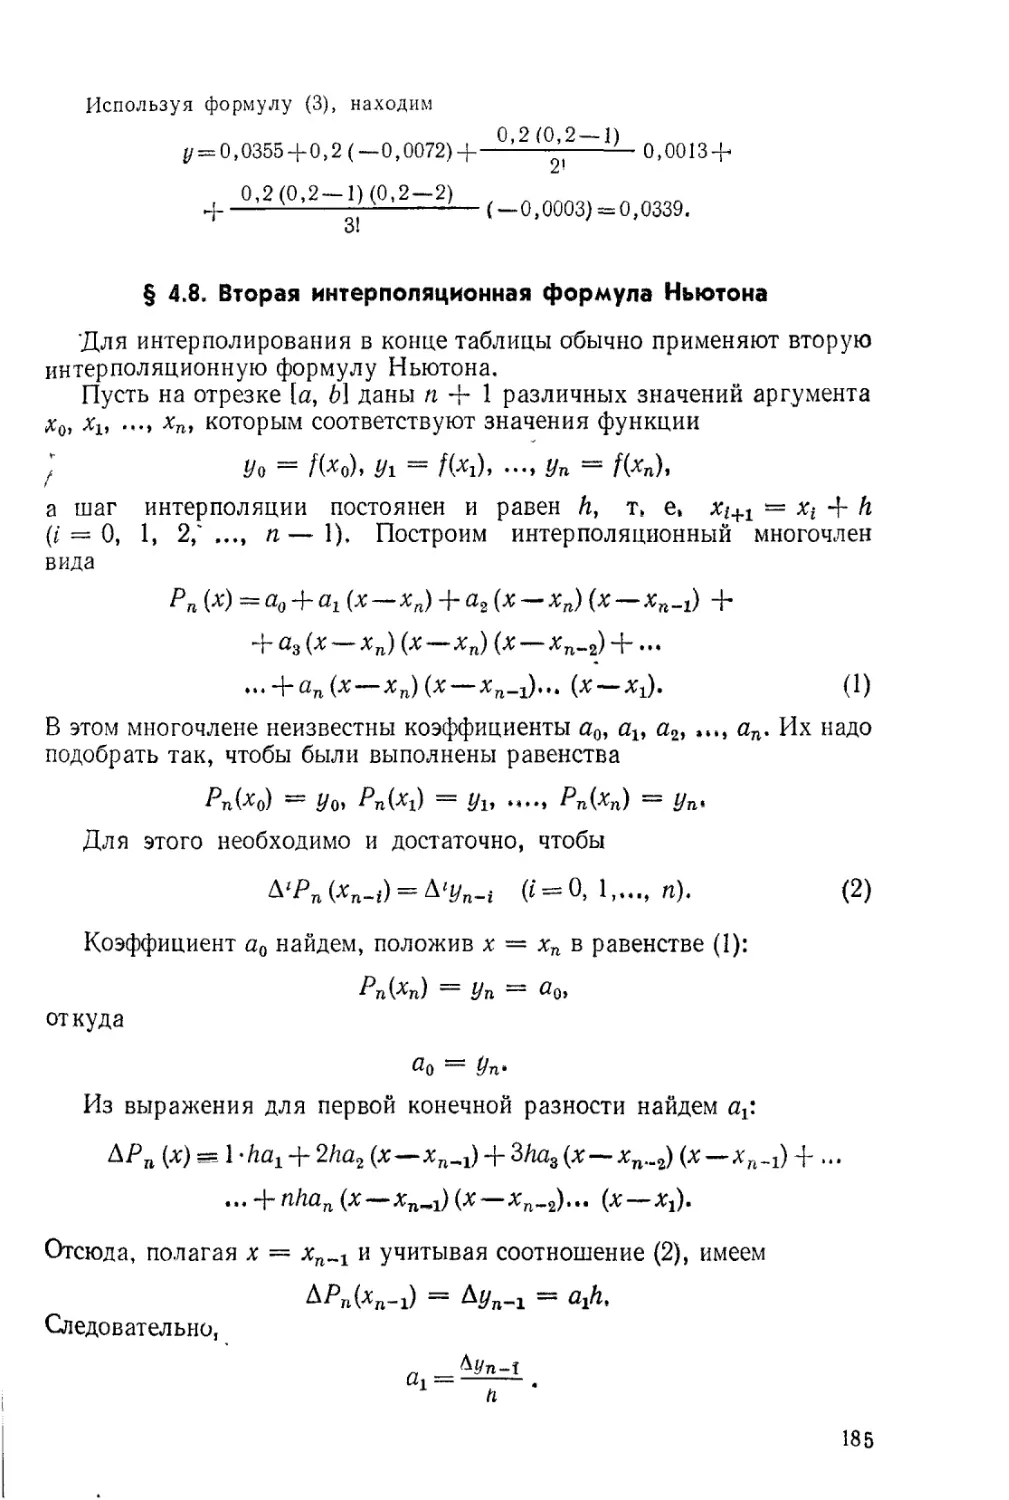 § 4.8. Вторая интерполяционная формула Ньютона